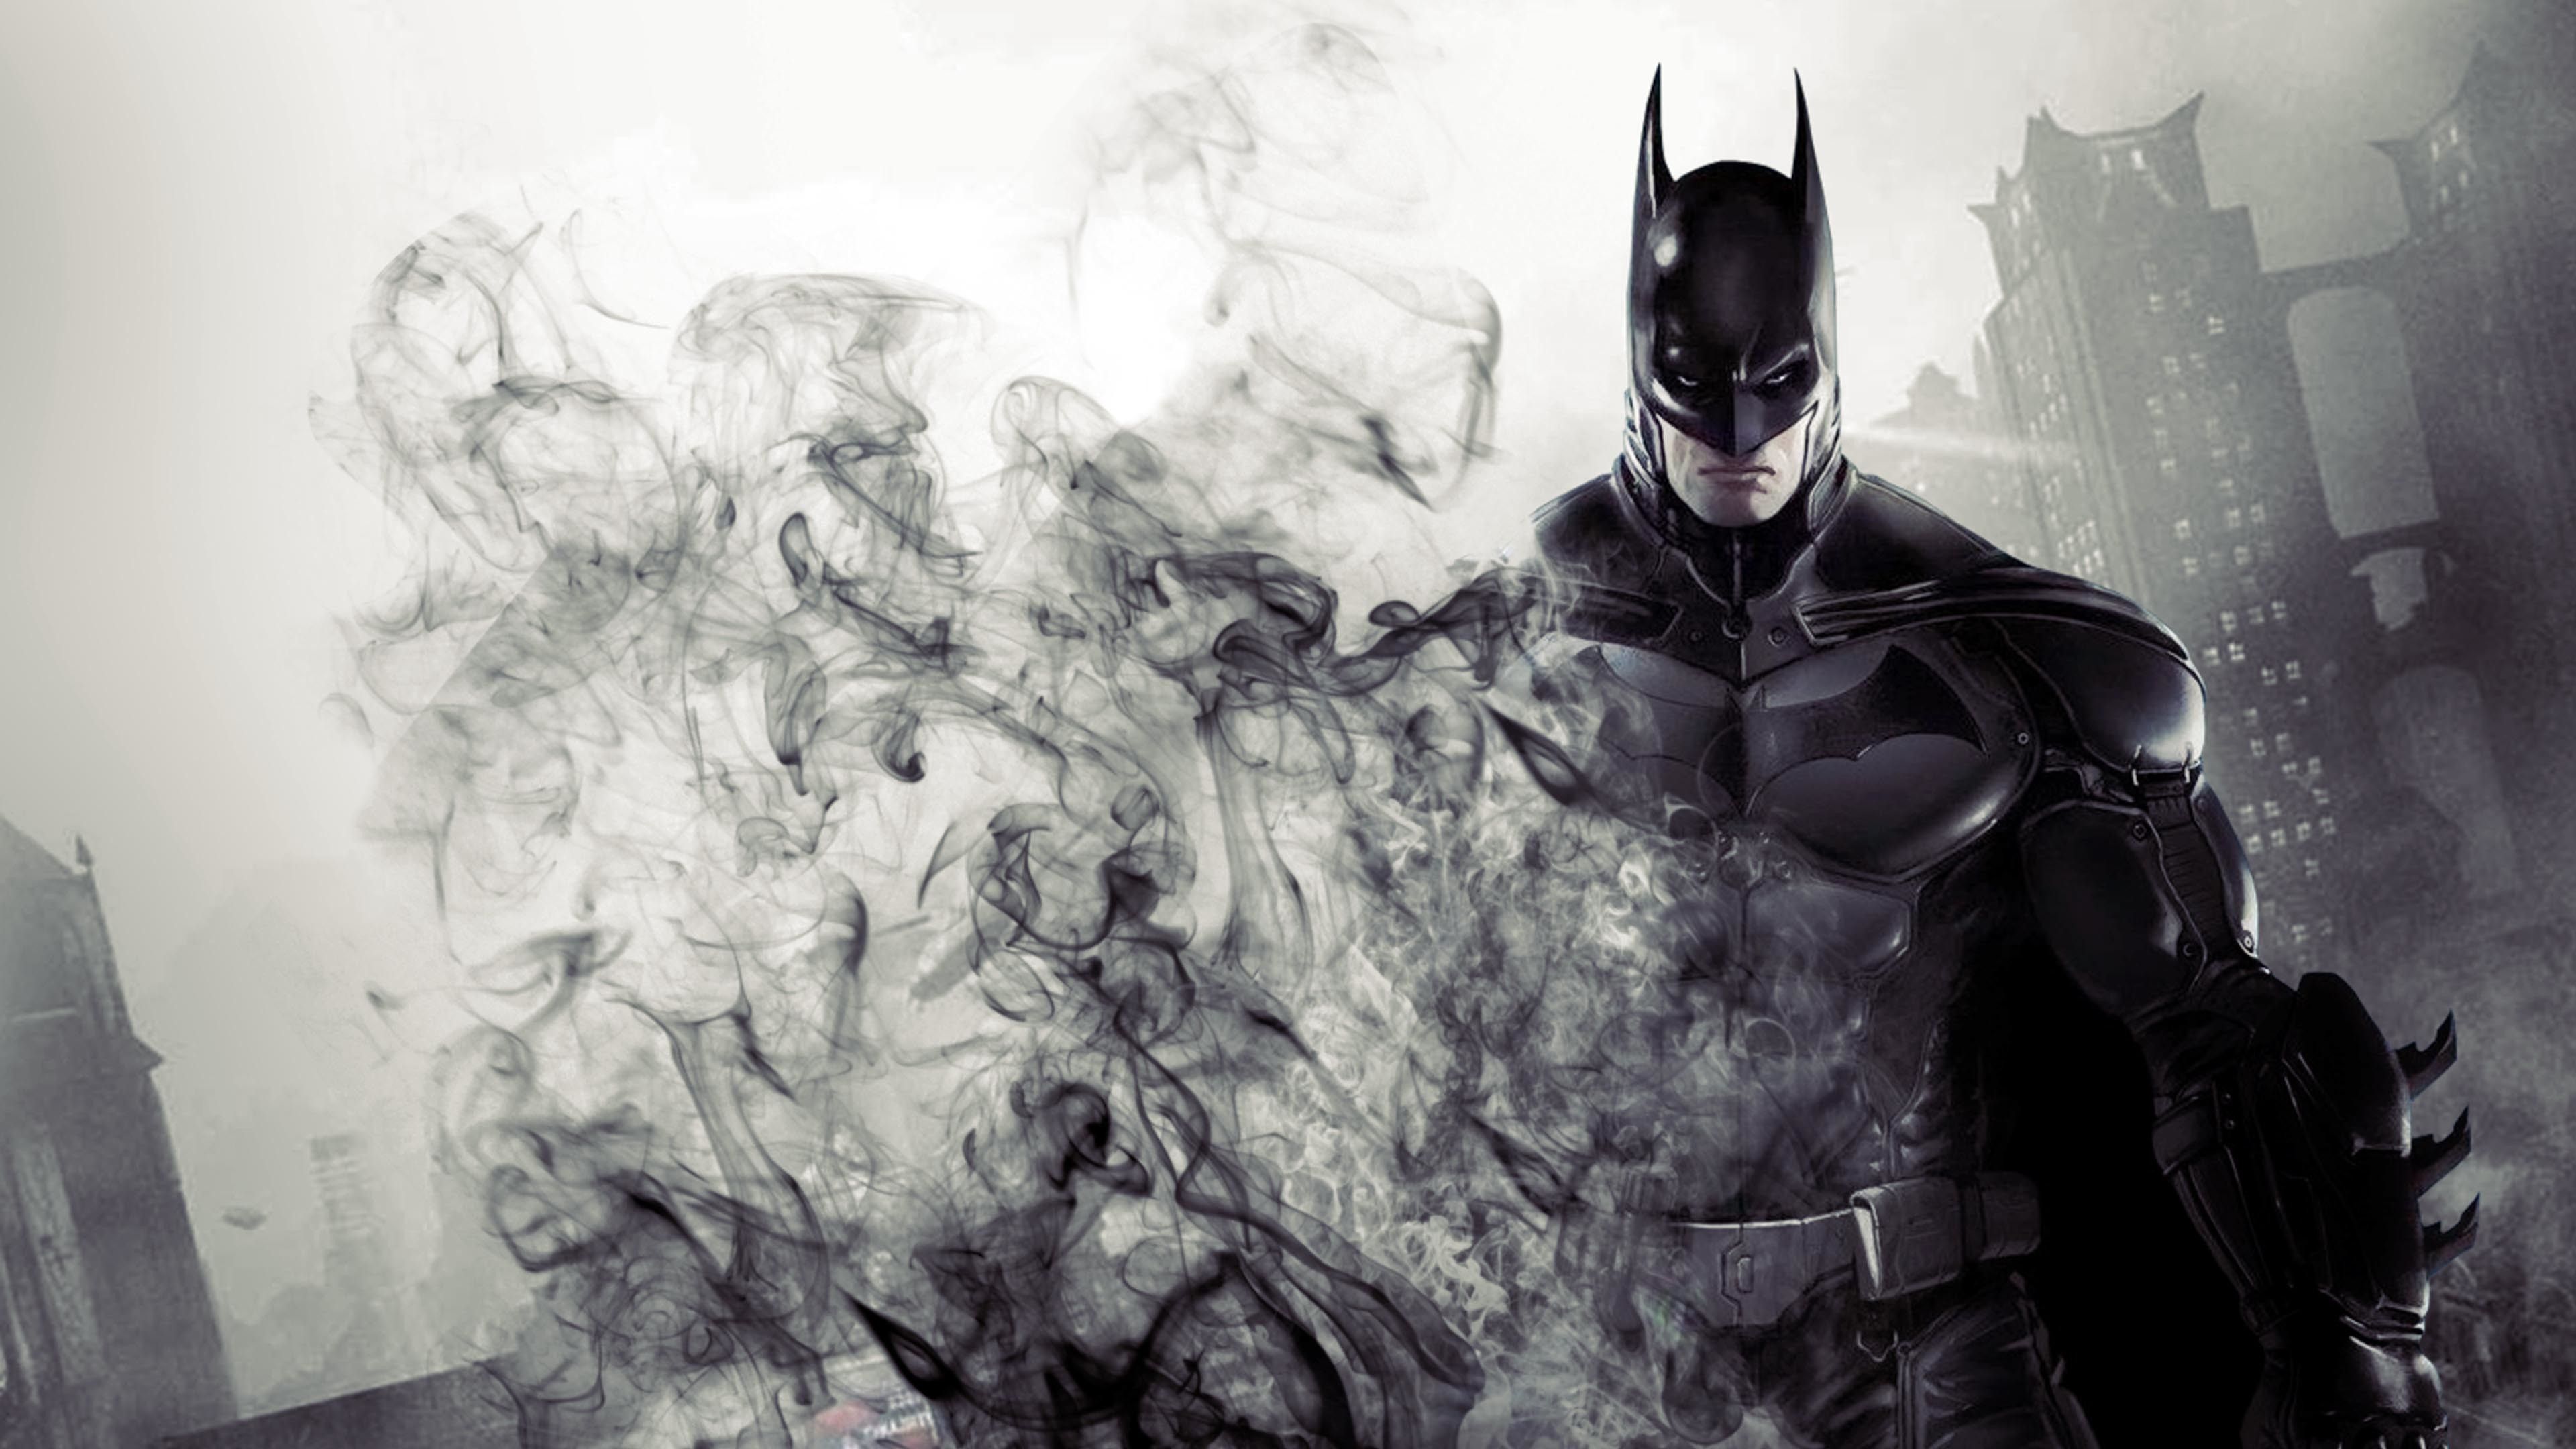 Bạn yêu thích Batman? Wallpaper 4K mới nhất đến từ series phim của DC Superhero sẽ đưa bạn đến với Gotham City. Hình nền với chất lượng siêu nét, độ phân giải cao, giúp những chi tiết trên trang phục của Batman trở nên sắc nét hơn bao giờ hết.